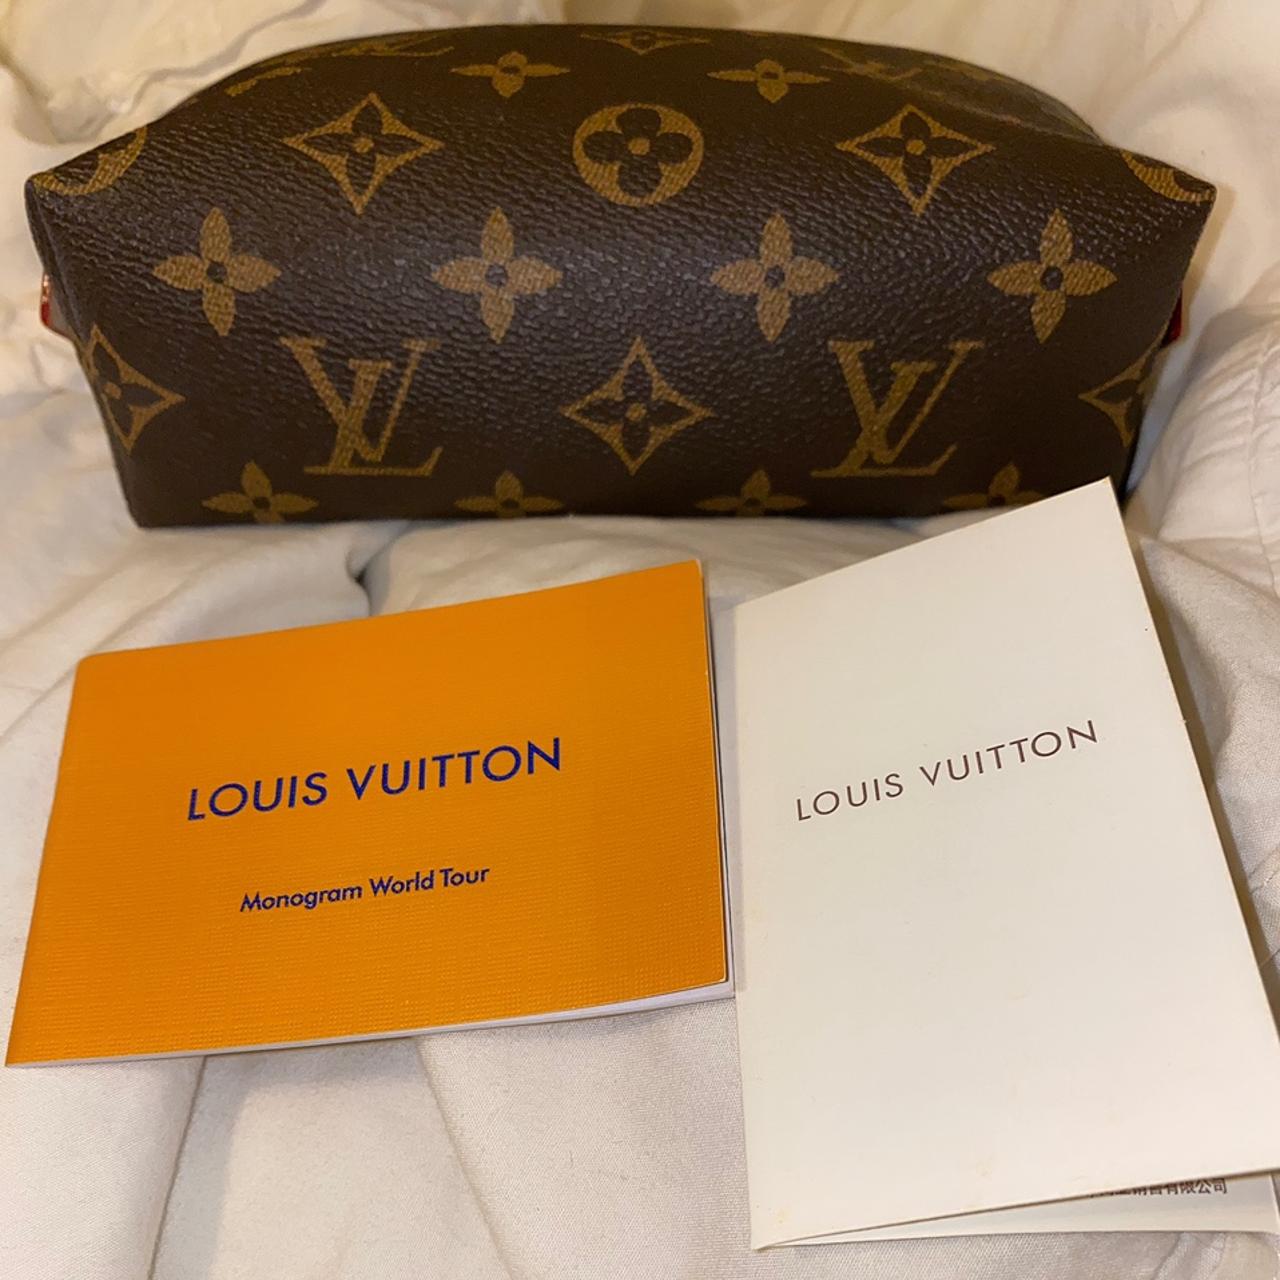 ✨✨✨ Authentic pre-owned Louis Vuitton Monogram - Depop